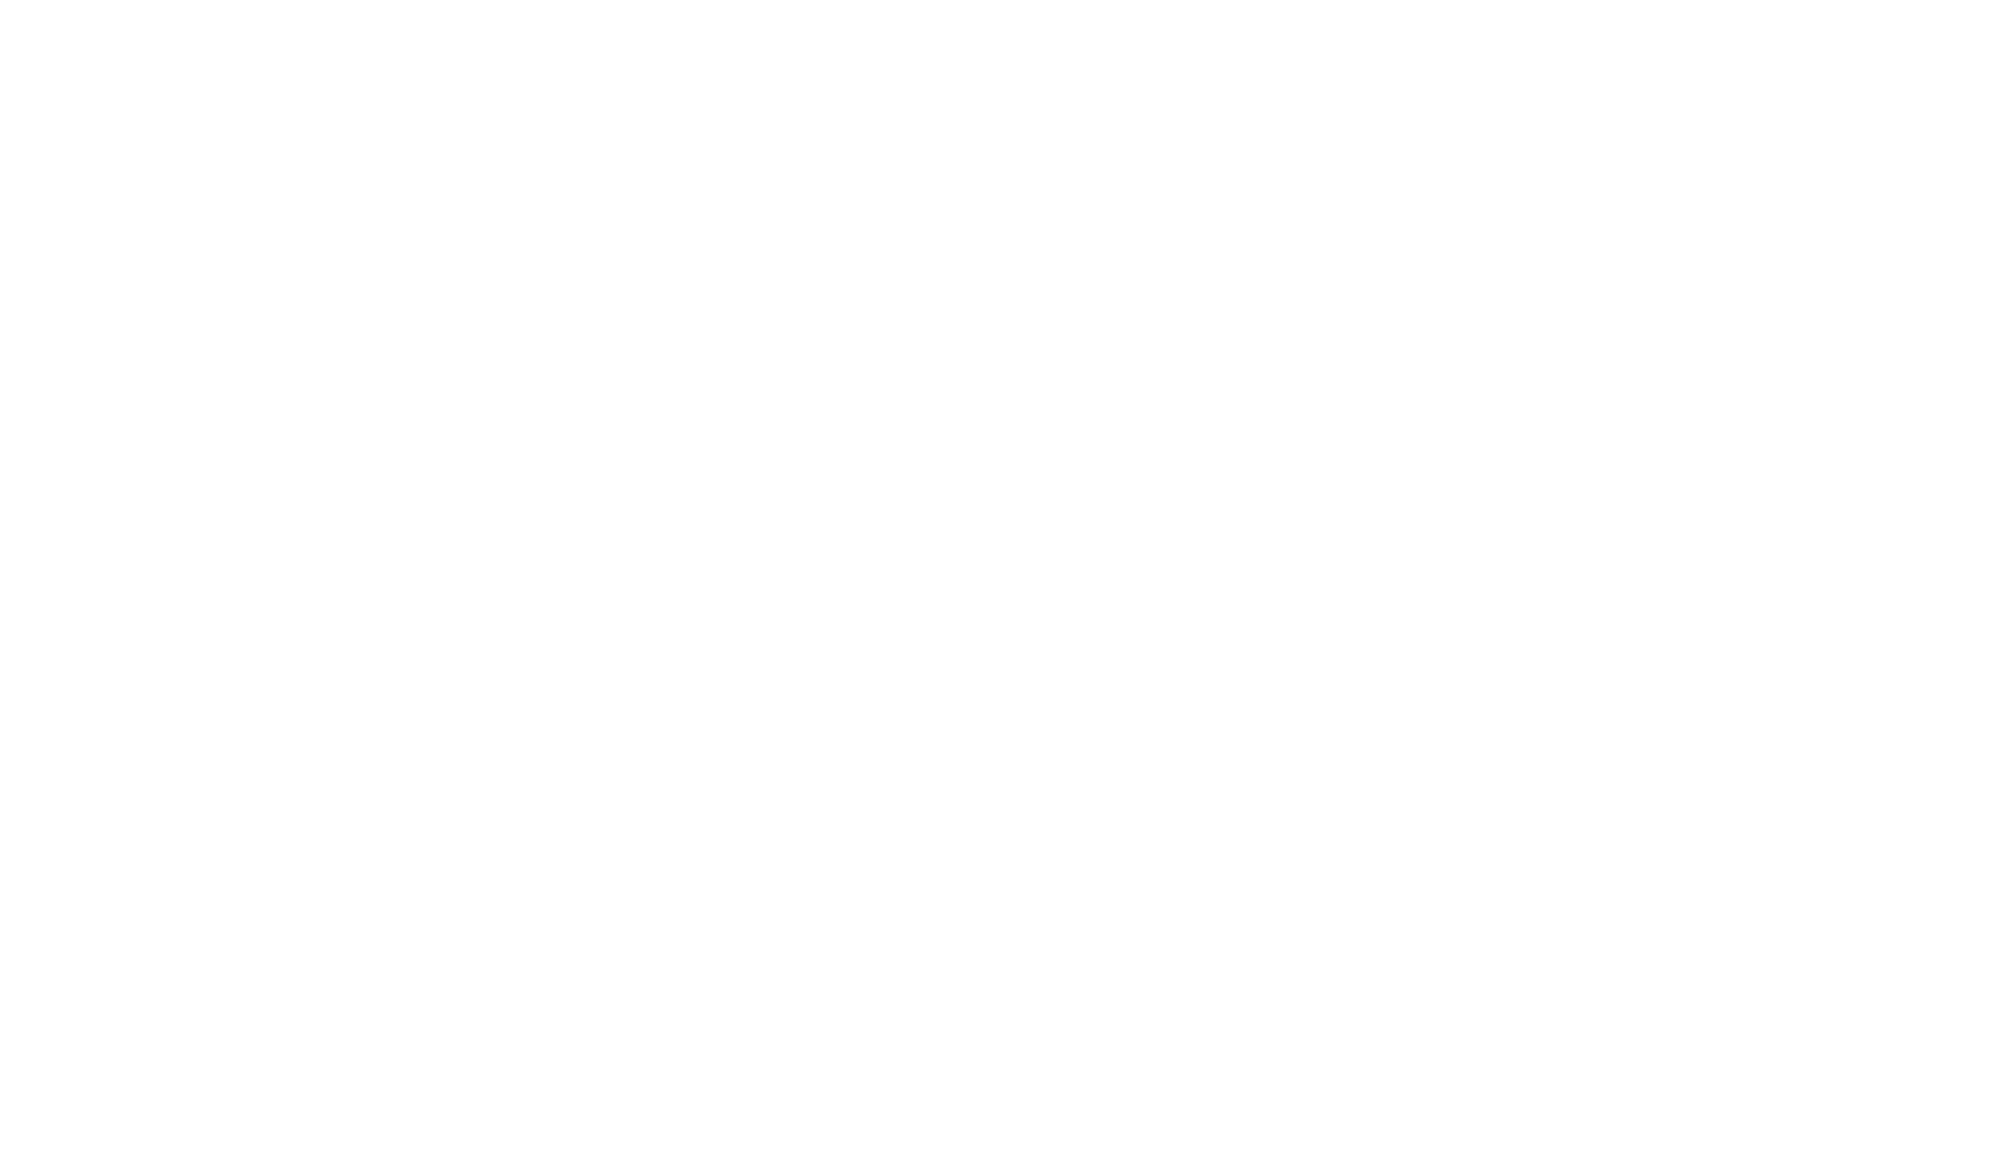 World Junior Barbecue League